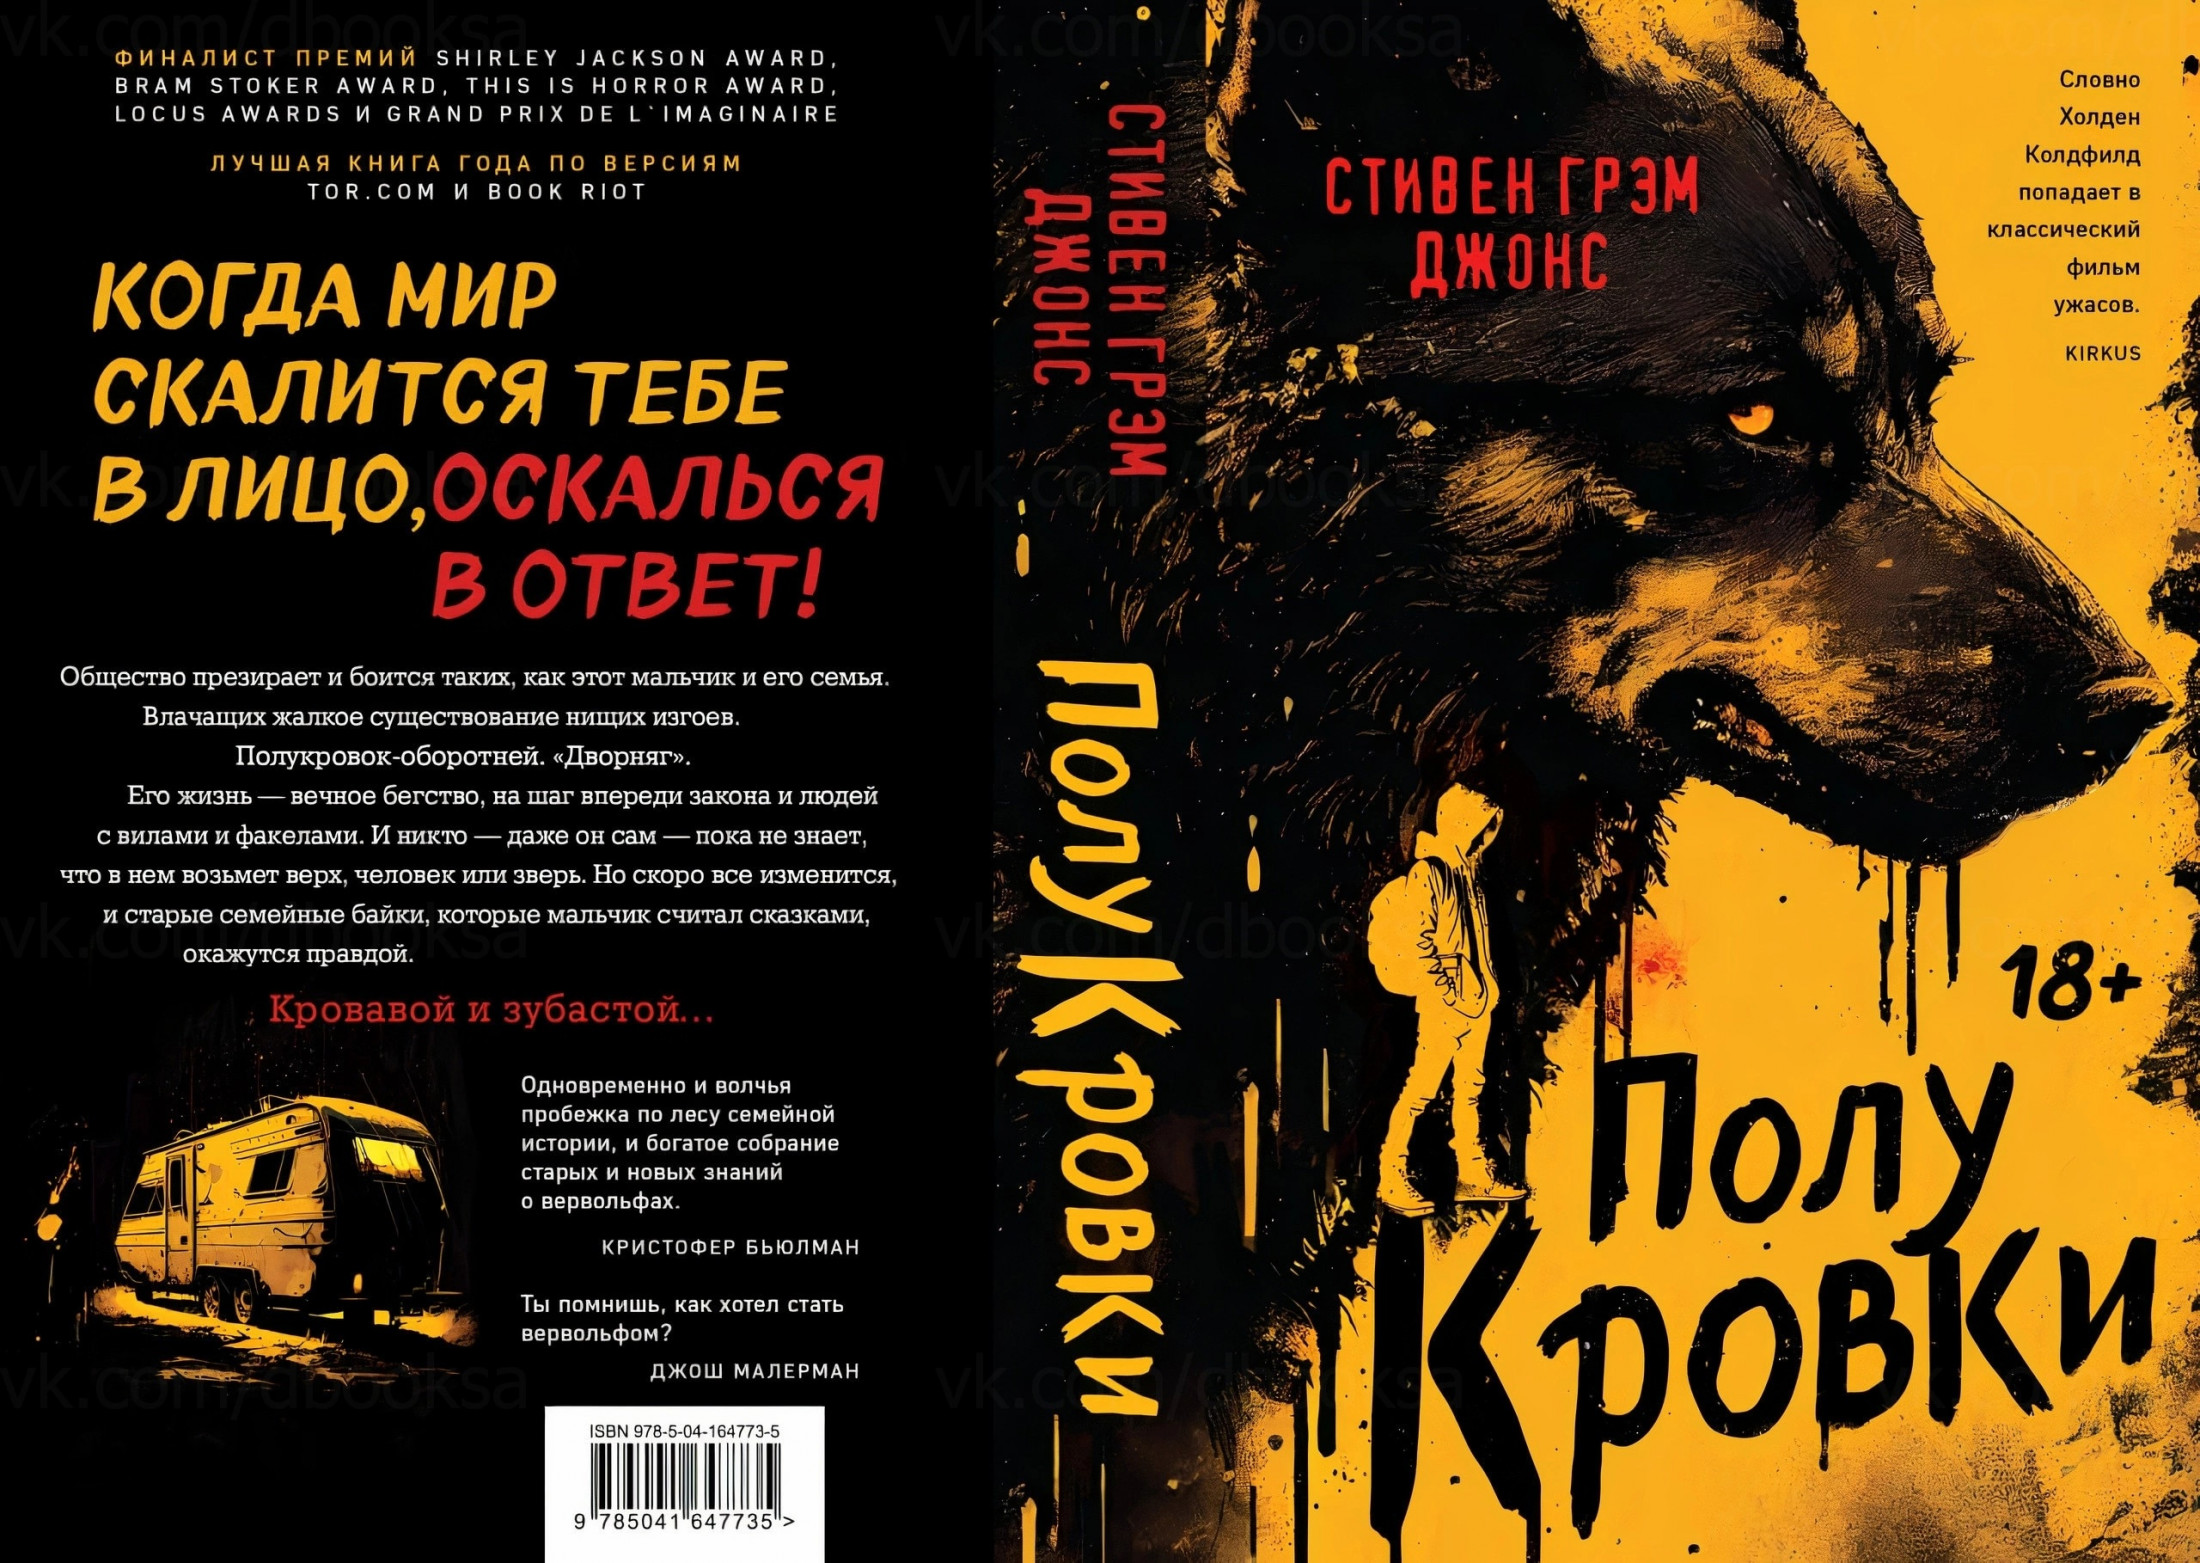 Роман Стивена Грэма Джонса про оборотней выйдет на русском